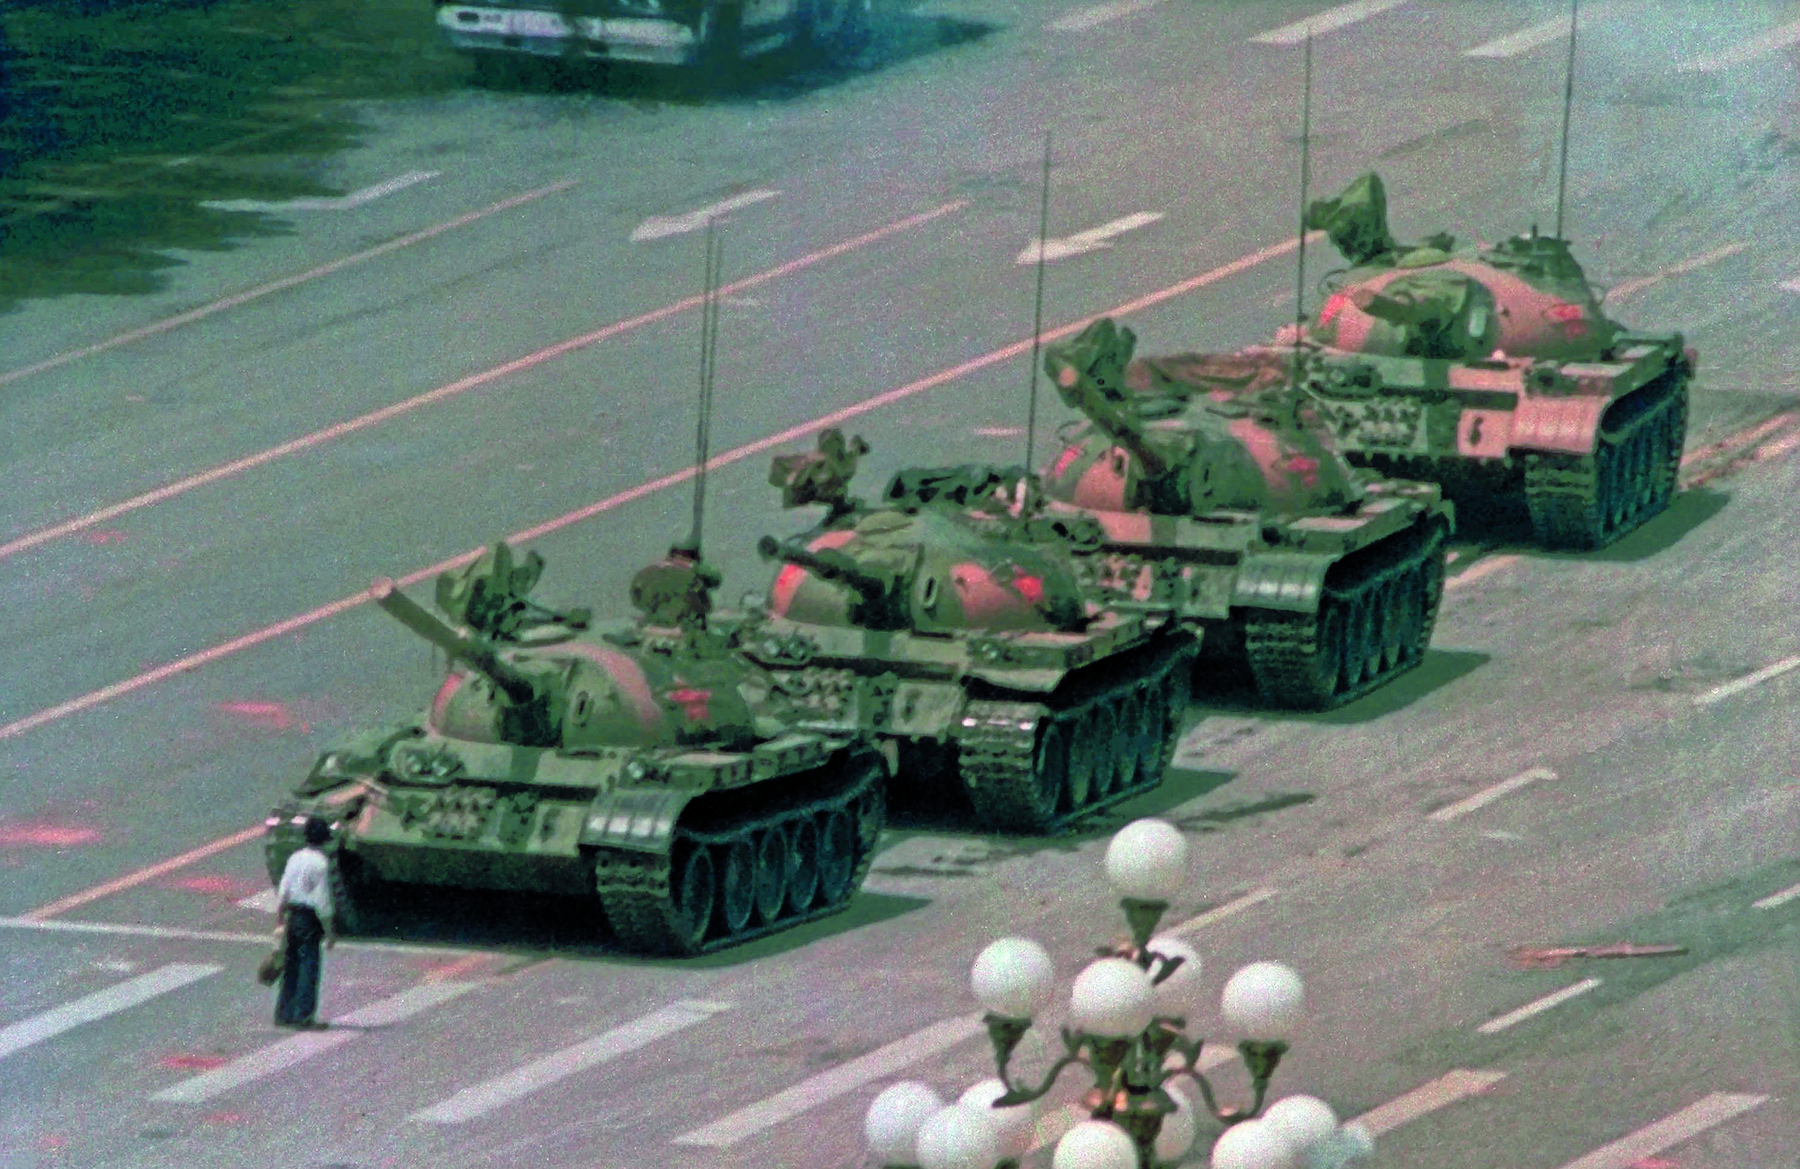 Fotografia. Destaque para uma pessoa em pé, vista de costas, sobre uma via asfaltada, à frente de quatro tanques de guerra com canhões, enfileirados.